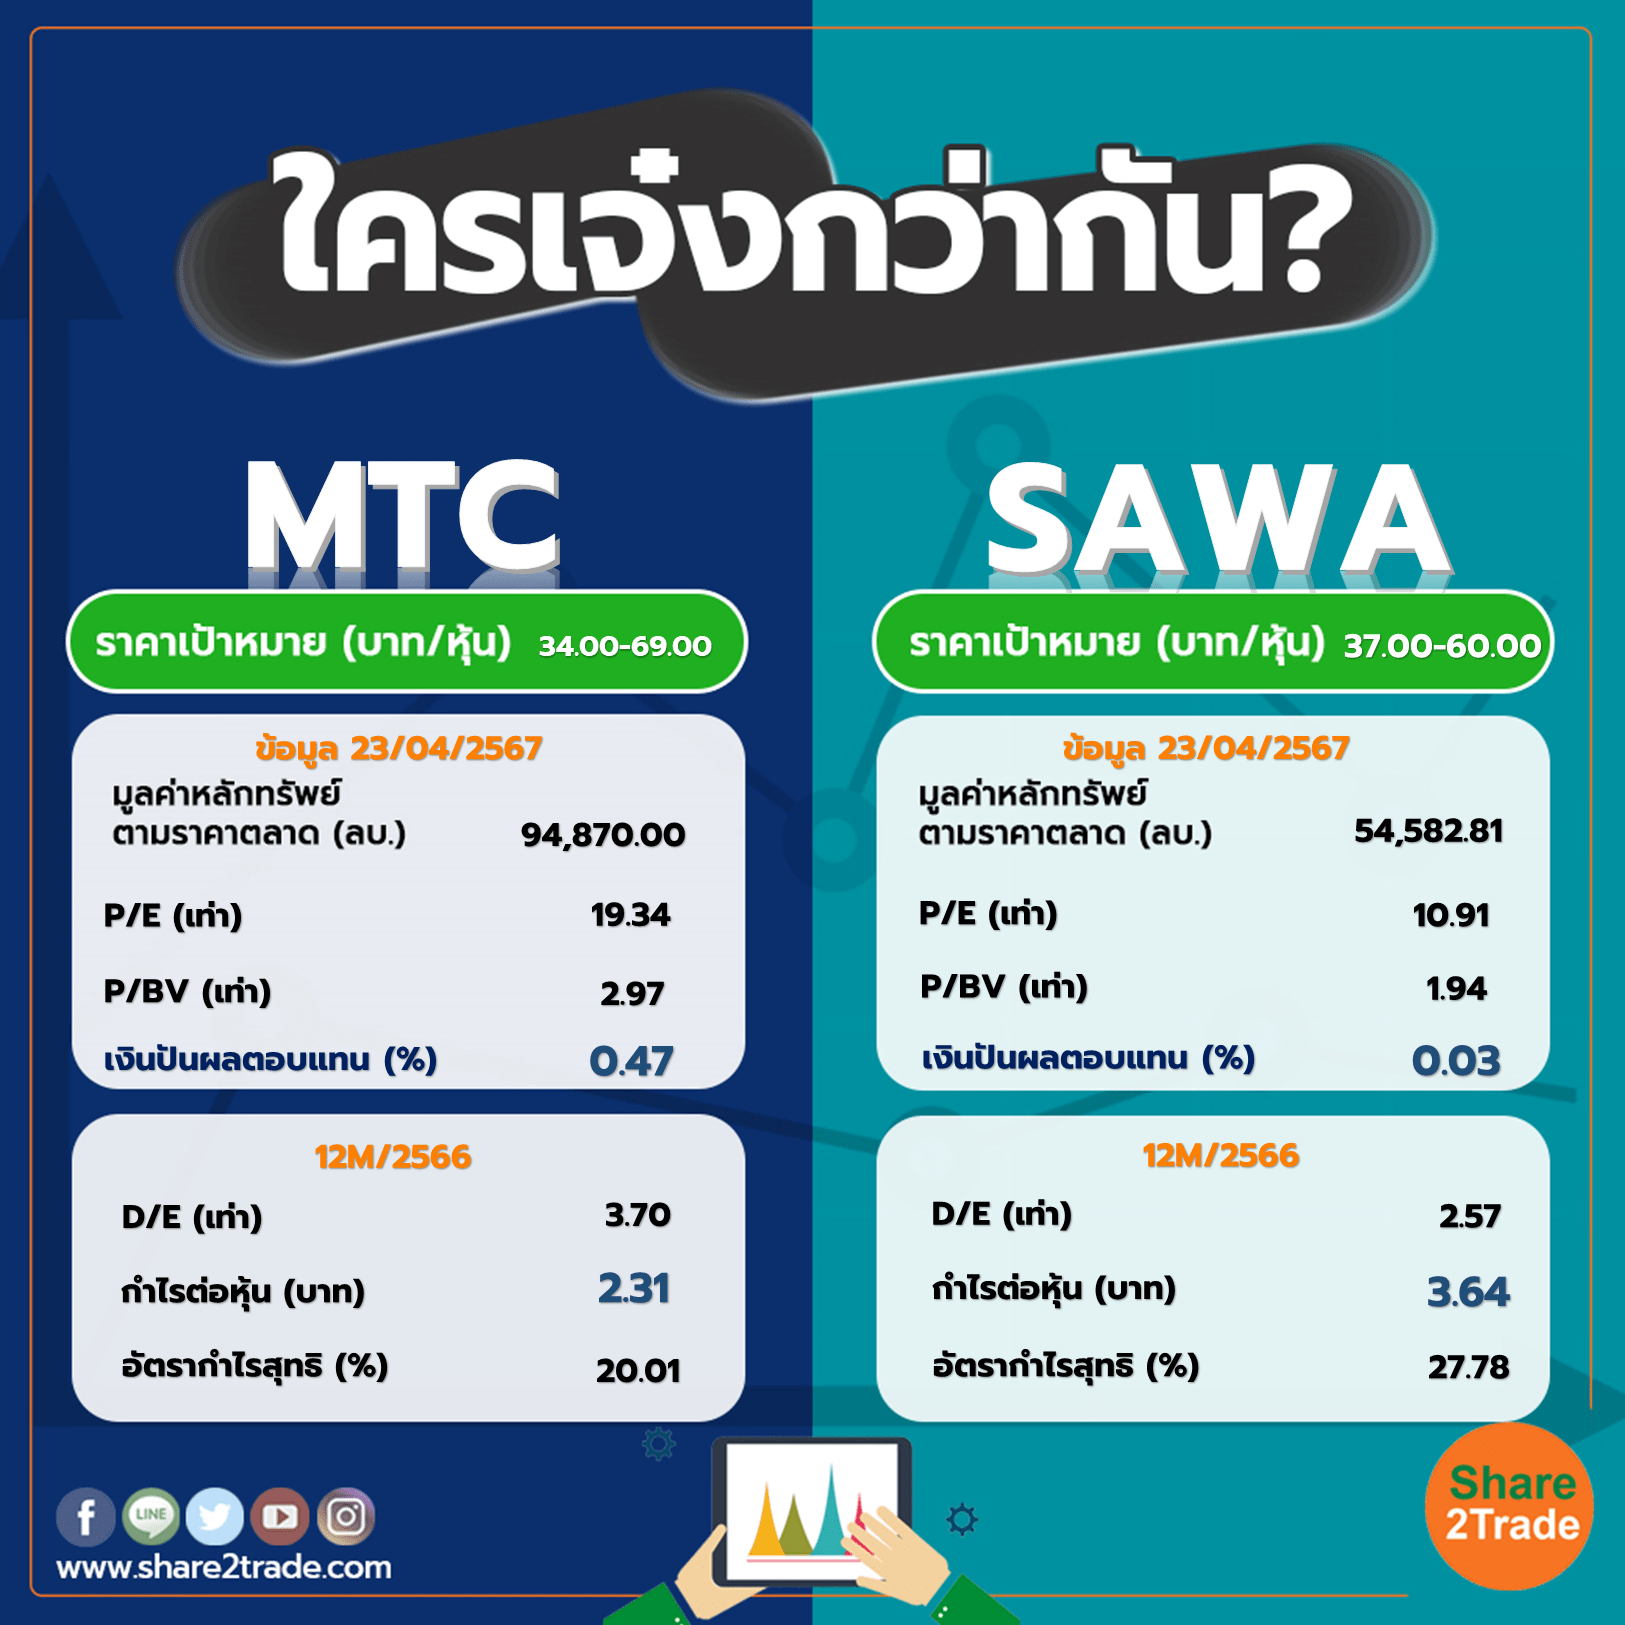 ใครเจ๋งกว่ากัน "MTC" VS "SAWA"